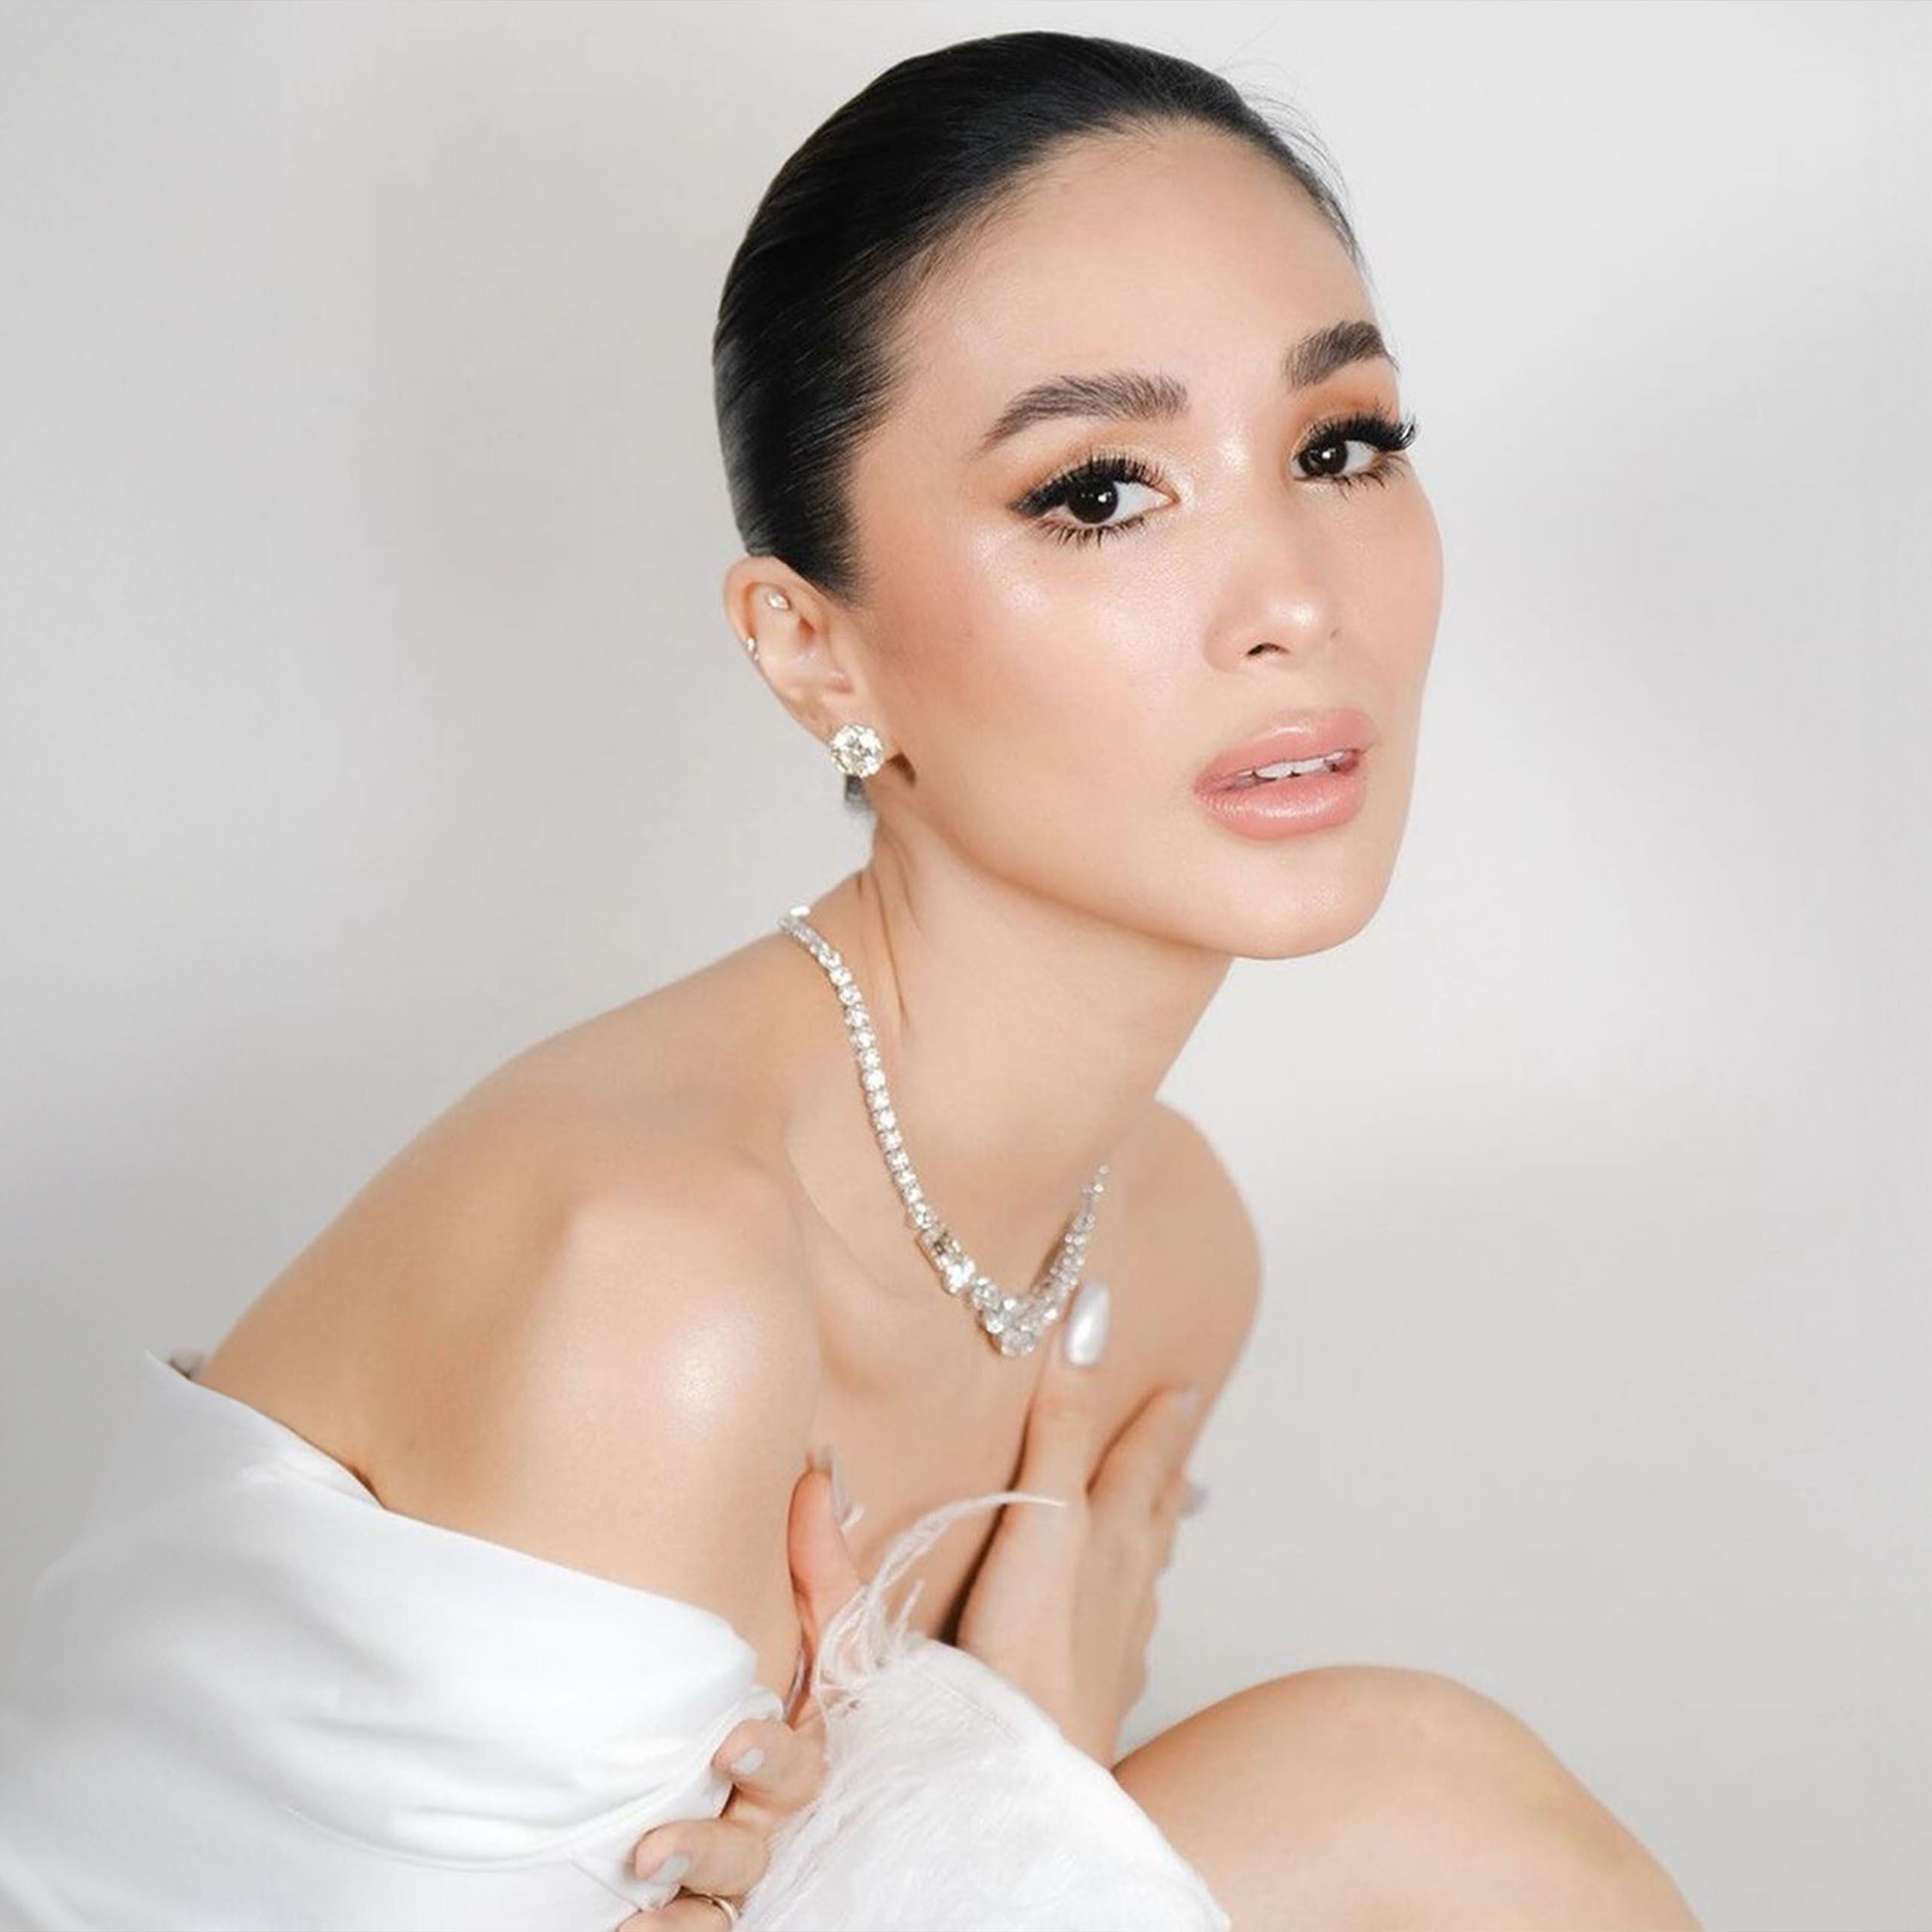 How to Recreate Heart Evangelista's Vow Renewal Beauty Look, According to Albert Kurniawan